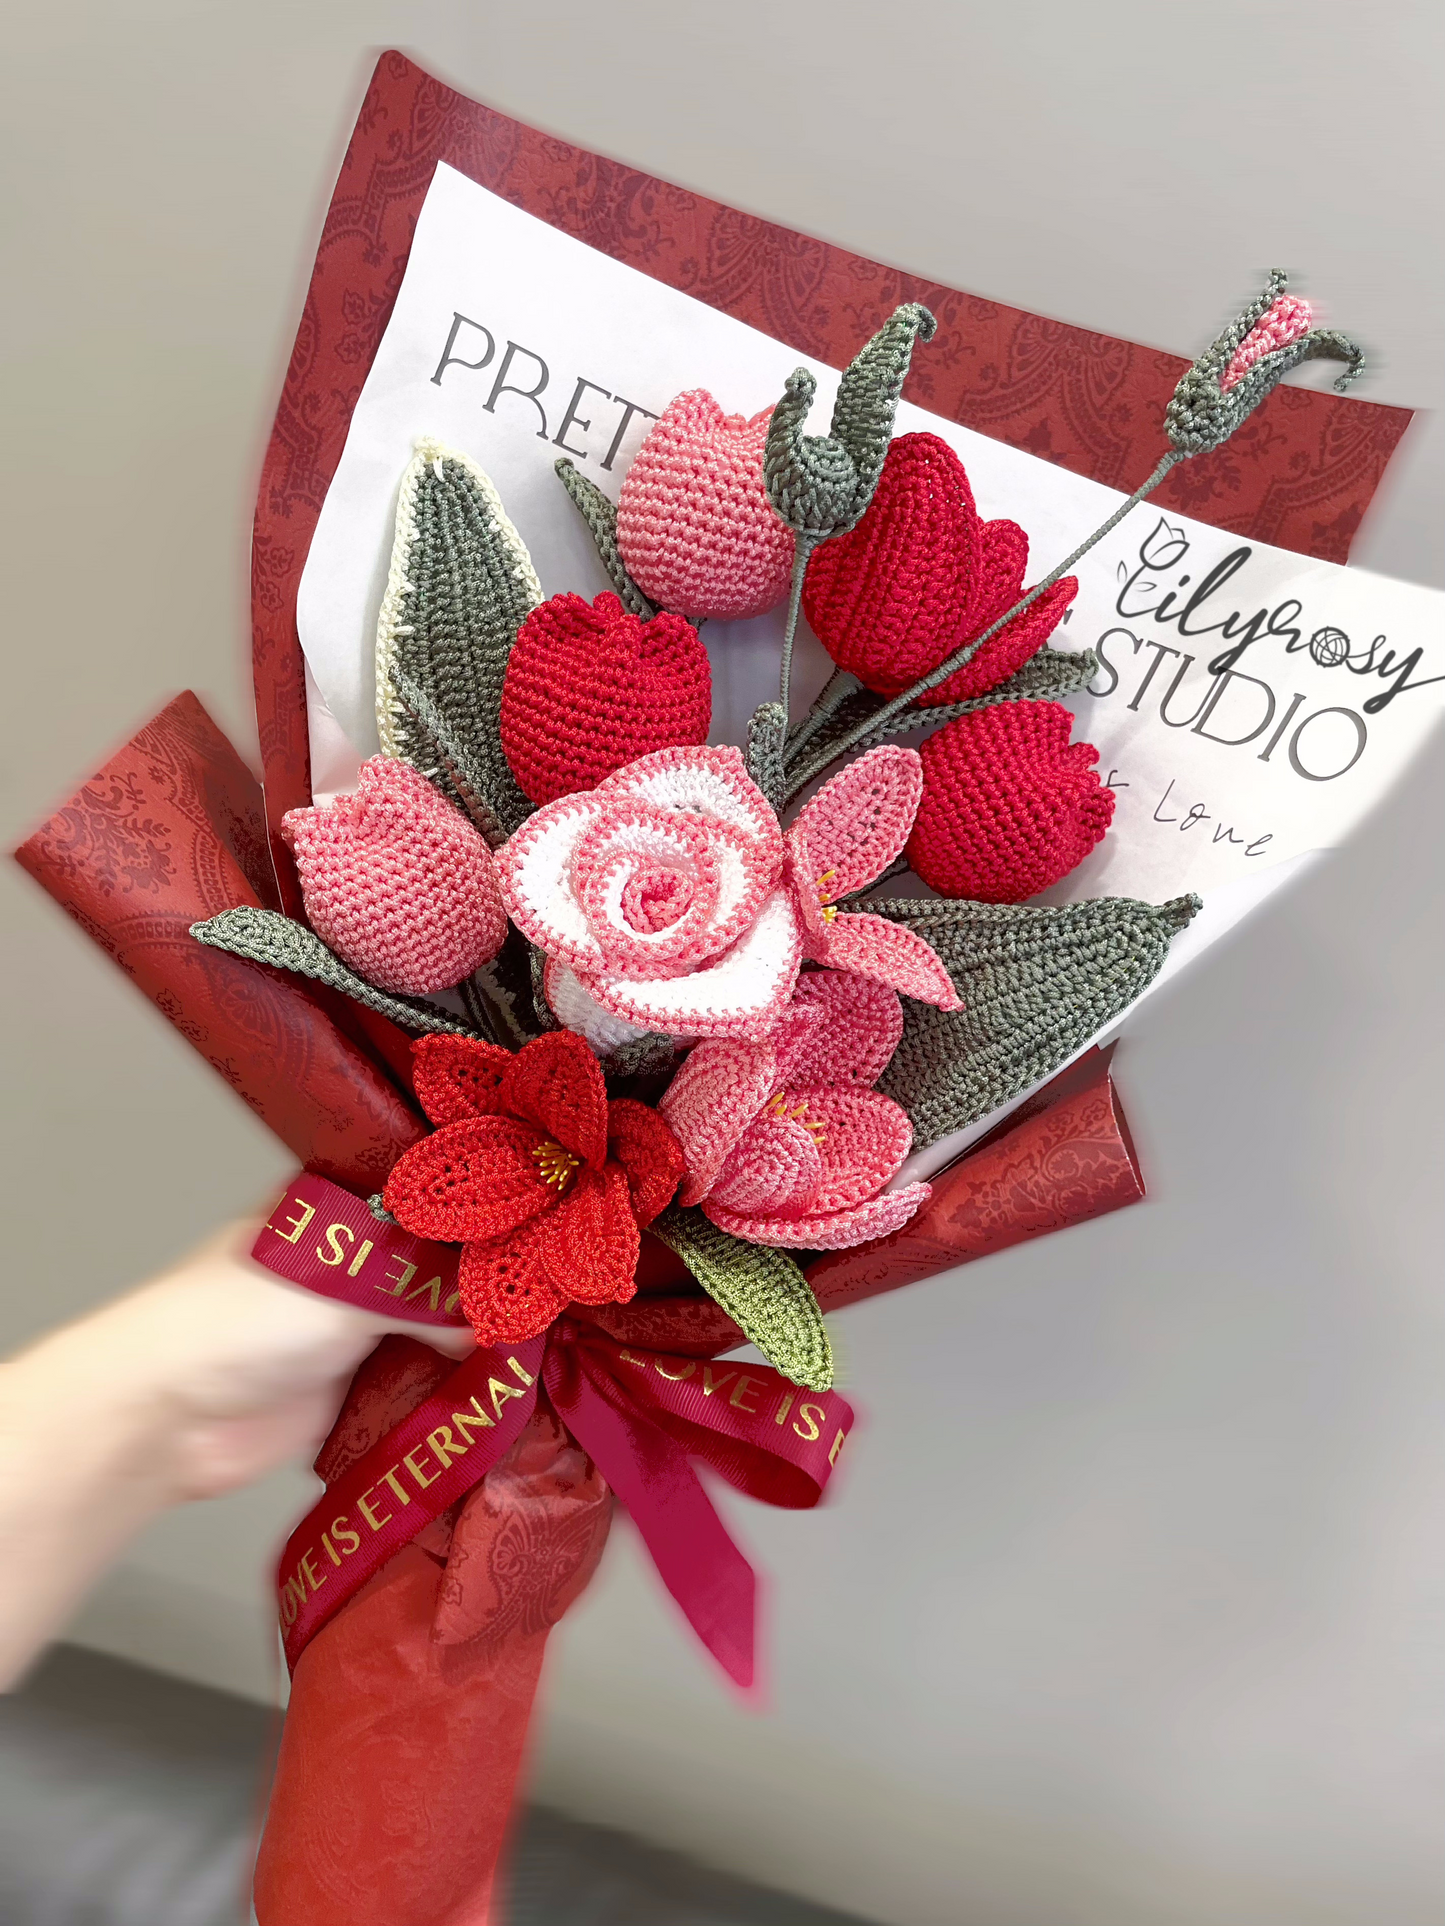 Altamente recomendado| Ramo de tulipanes rojos de ganchillo, regalo para novia/amiga/mamá, regalos del día de San Valentín